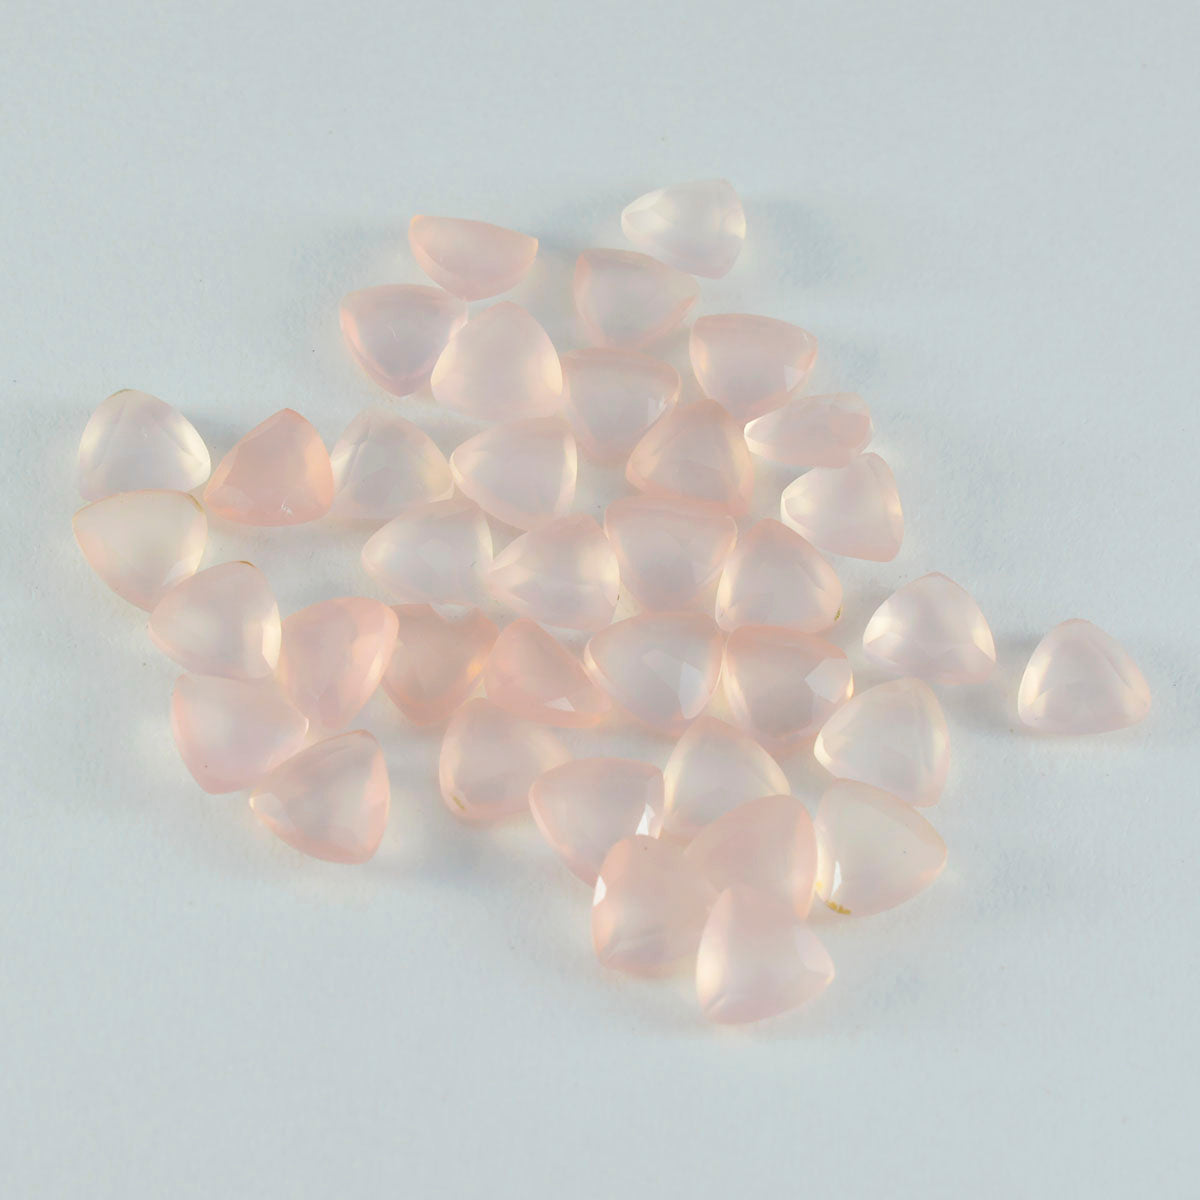 Riyogems 1pc quartz rose à facettes 6x6mm forme trillion une pierre précieuse en vrac de qualité